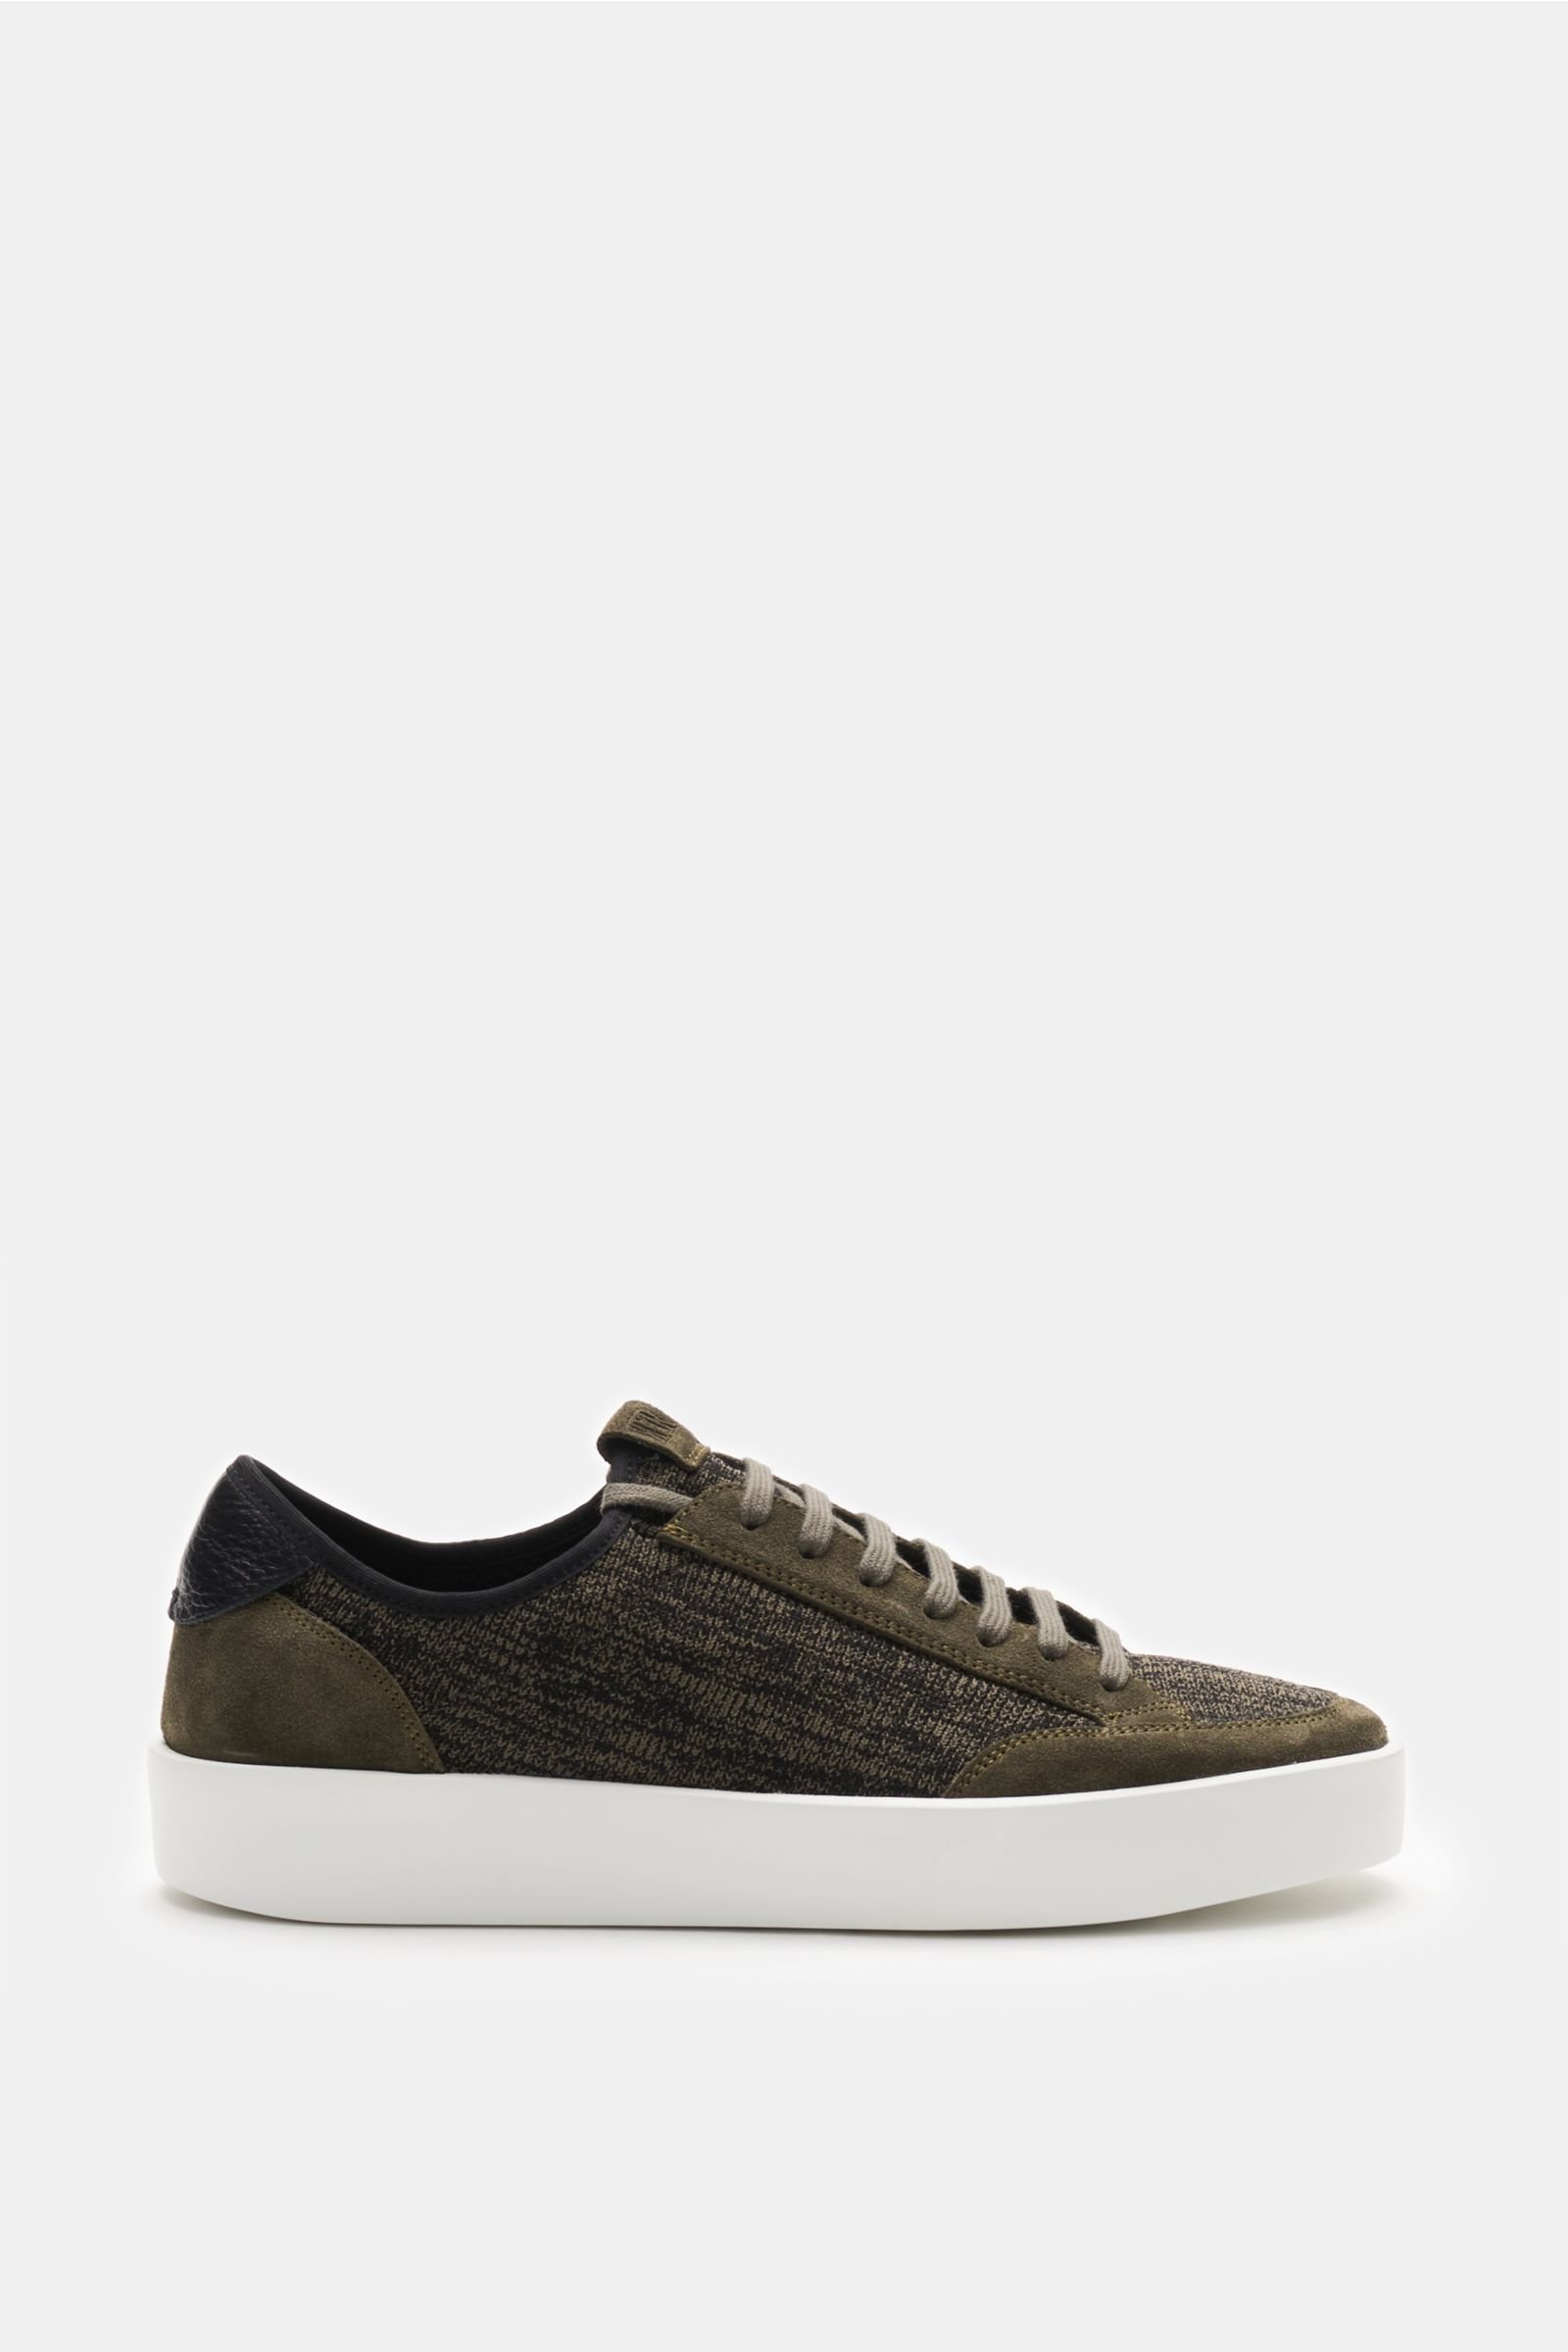 Sneakers olive/black